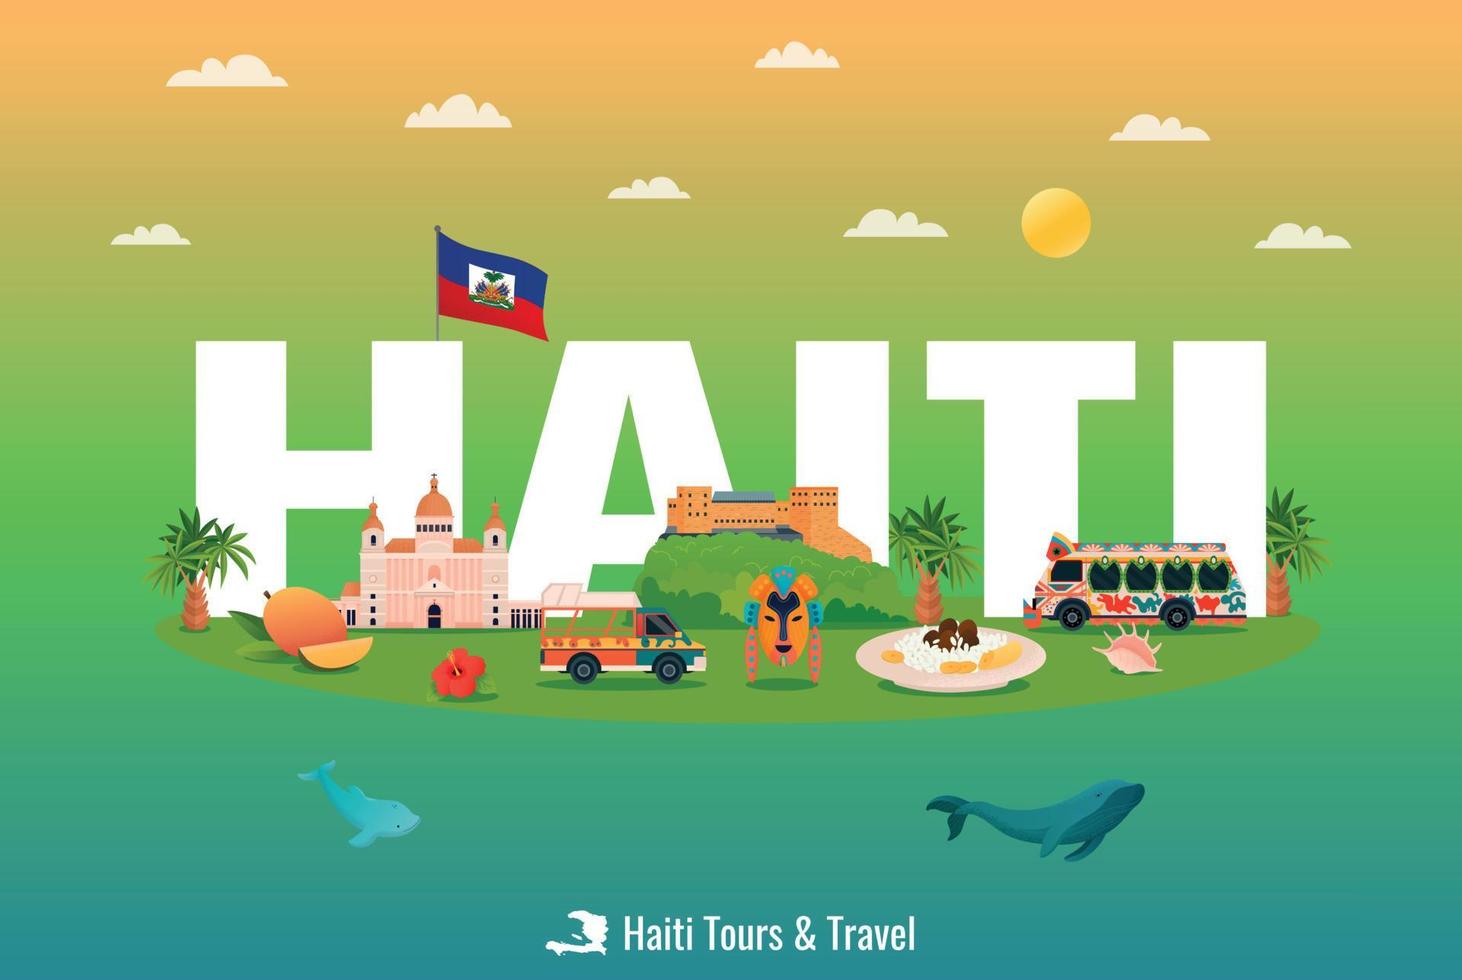 affiche de visites en haïti vecteur